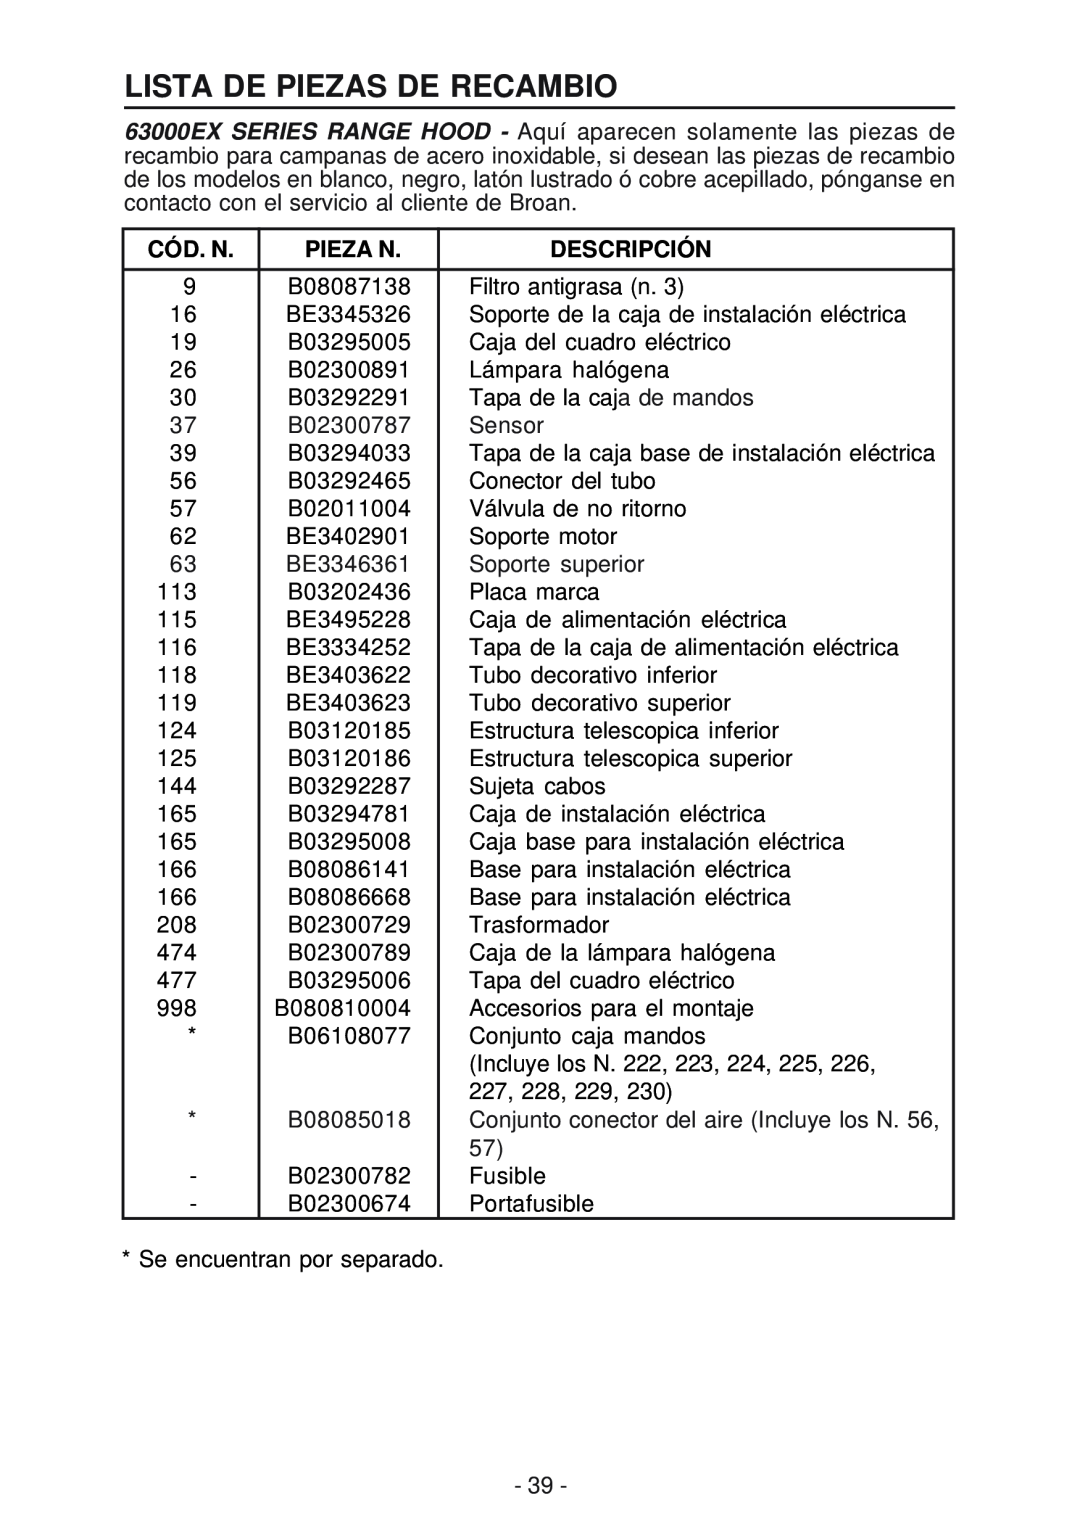 Broan 63000EX manual Lista De Piezas De Recambio, Cód. N, Pieza N, Descripción 